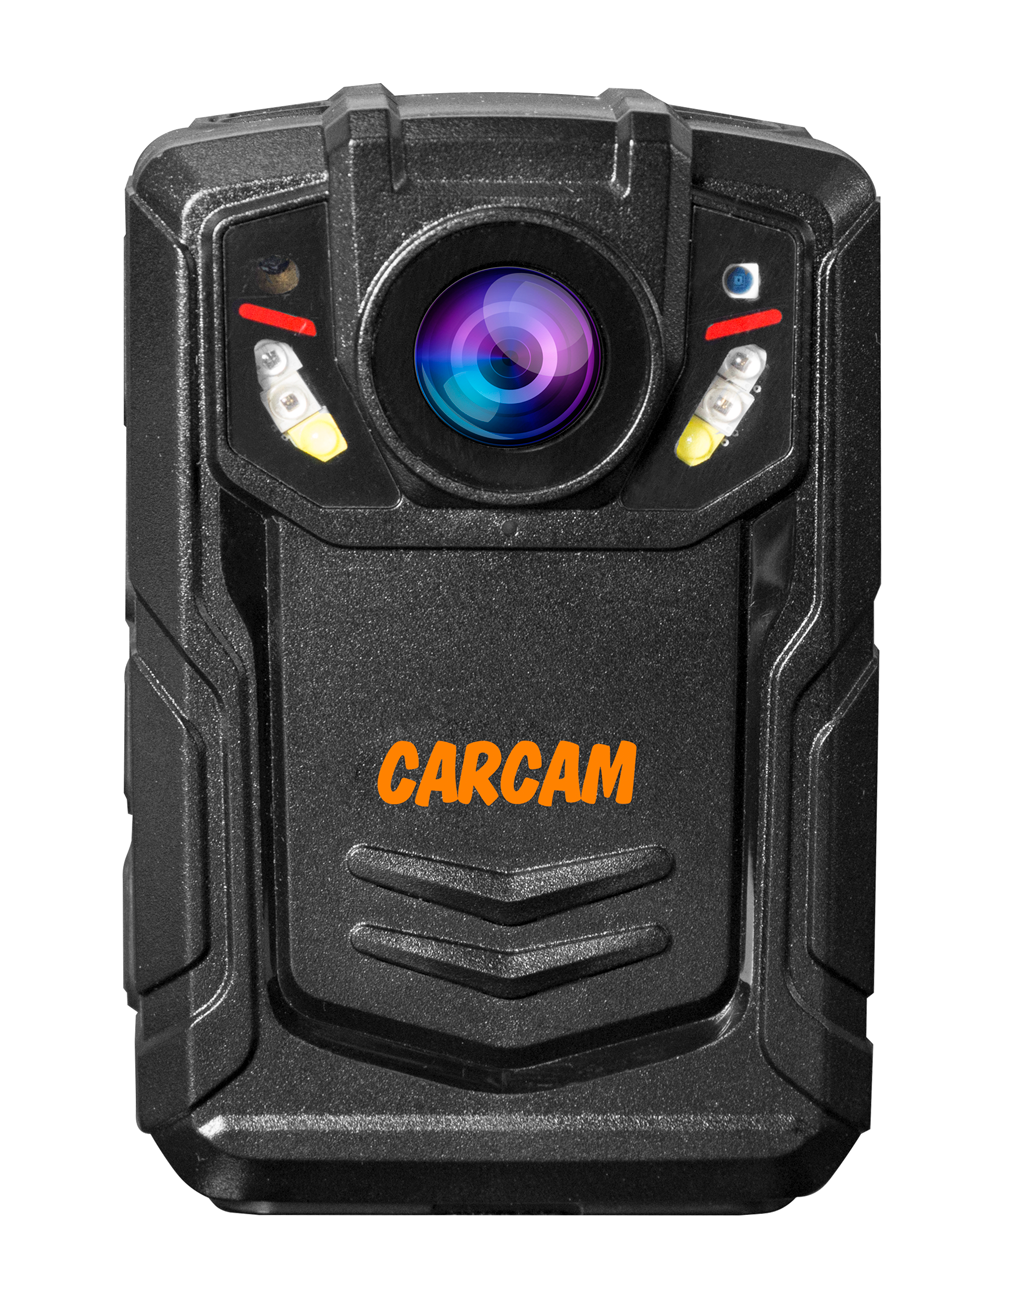 Персональный Quad HD видеорегистратор  CARCAM COMBAT 2S/4G 128GB персональный quad hd видеорегистратор для работников технических объектов carcam combat 2s prof 256gb